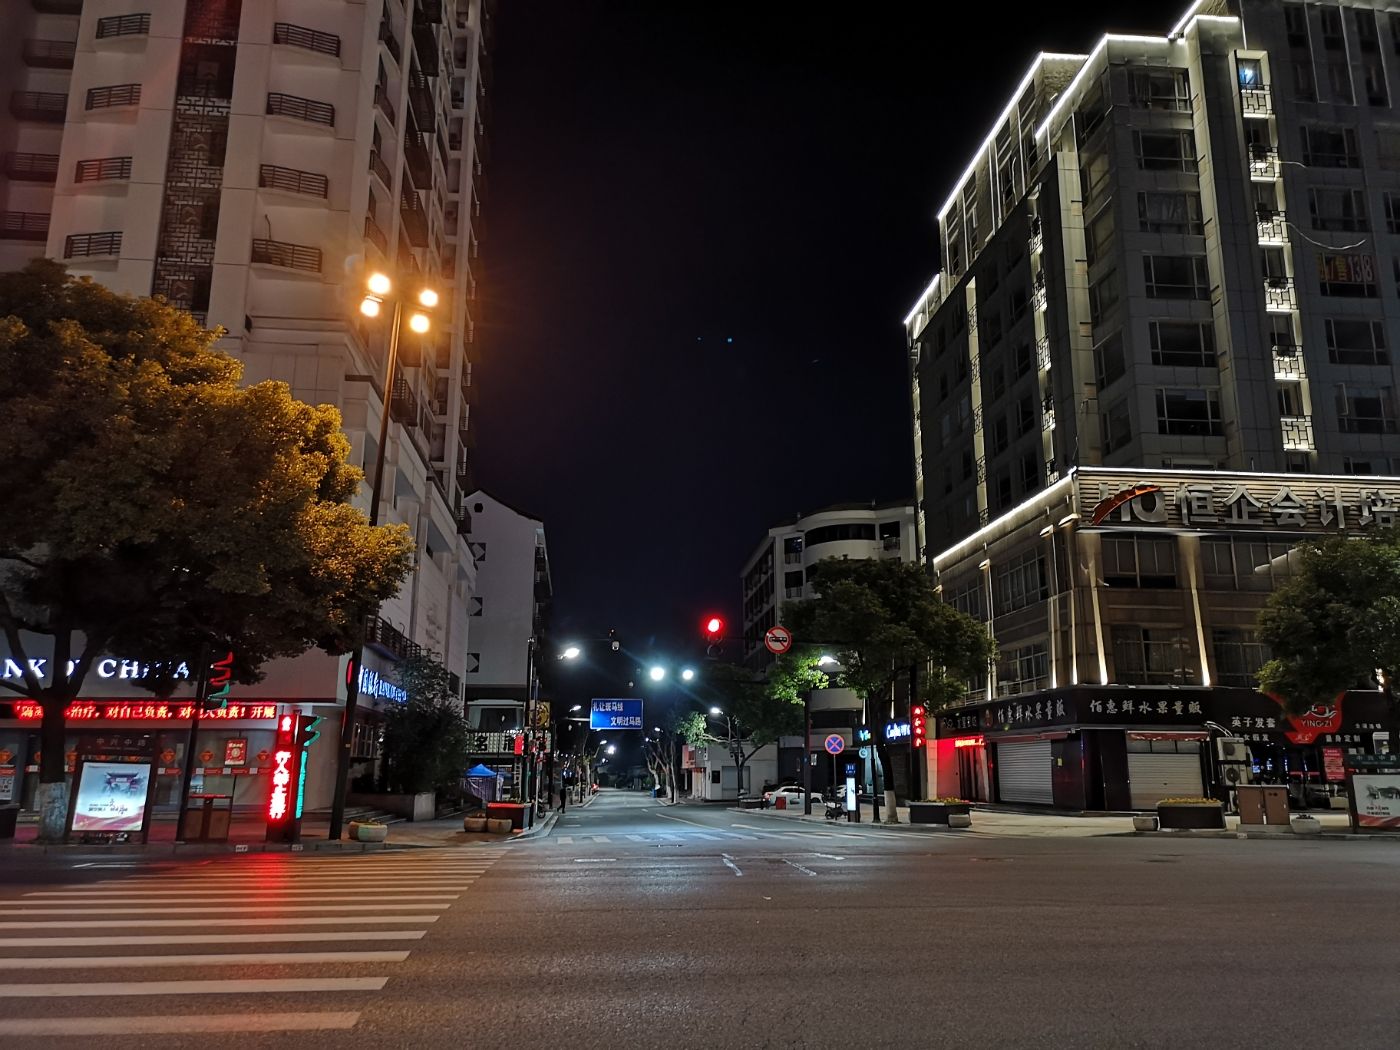 正月初八夜晚,城区街道实拍.2020.2.2